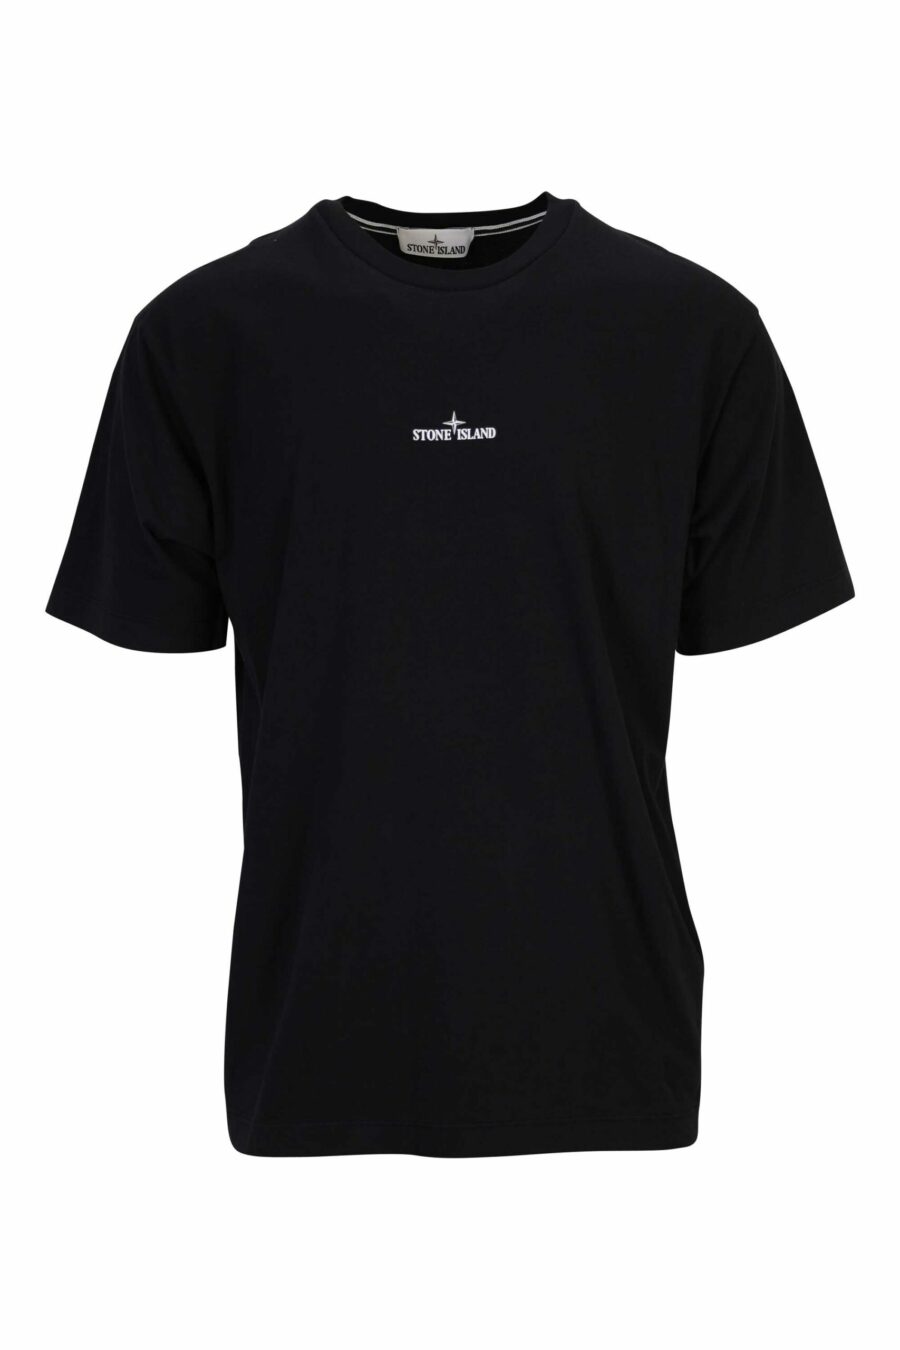 Schwarzes T-Shirt mit schwarzem zentrierten Minilog - 8052572912894 skaliert